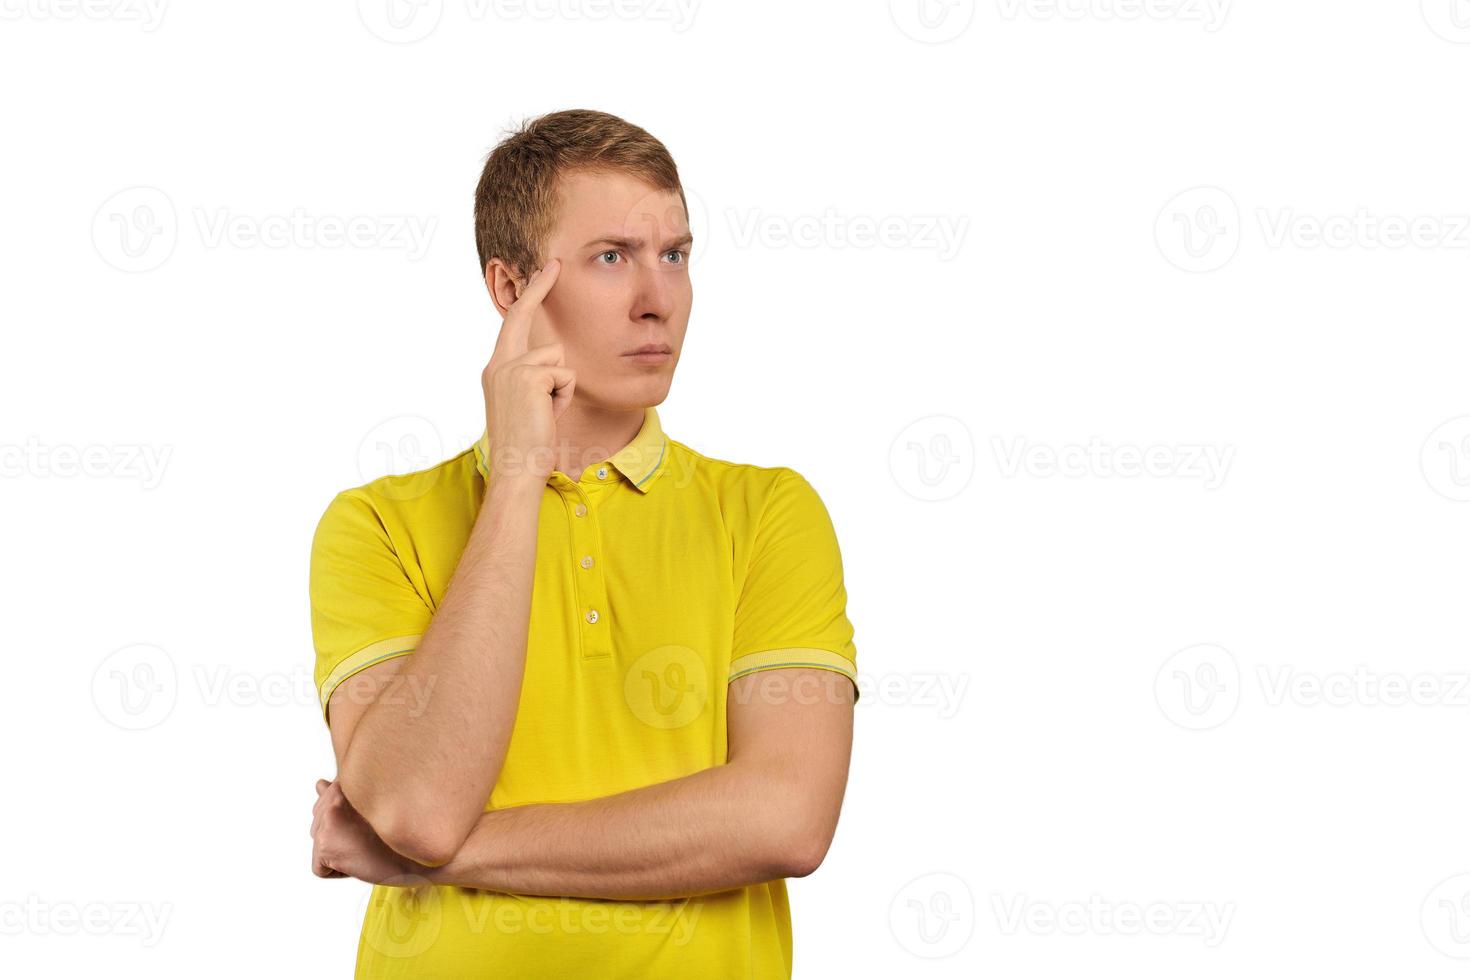 hombre reflexivo con camiseta amarilla mirando a la derecha, fondo blanco, reflexión filosófica foto